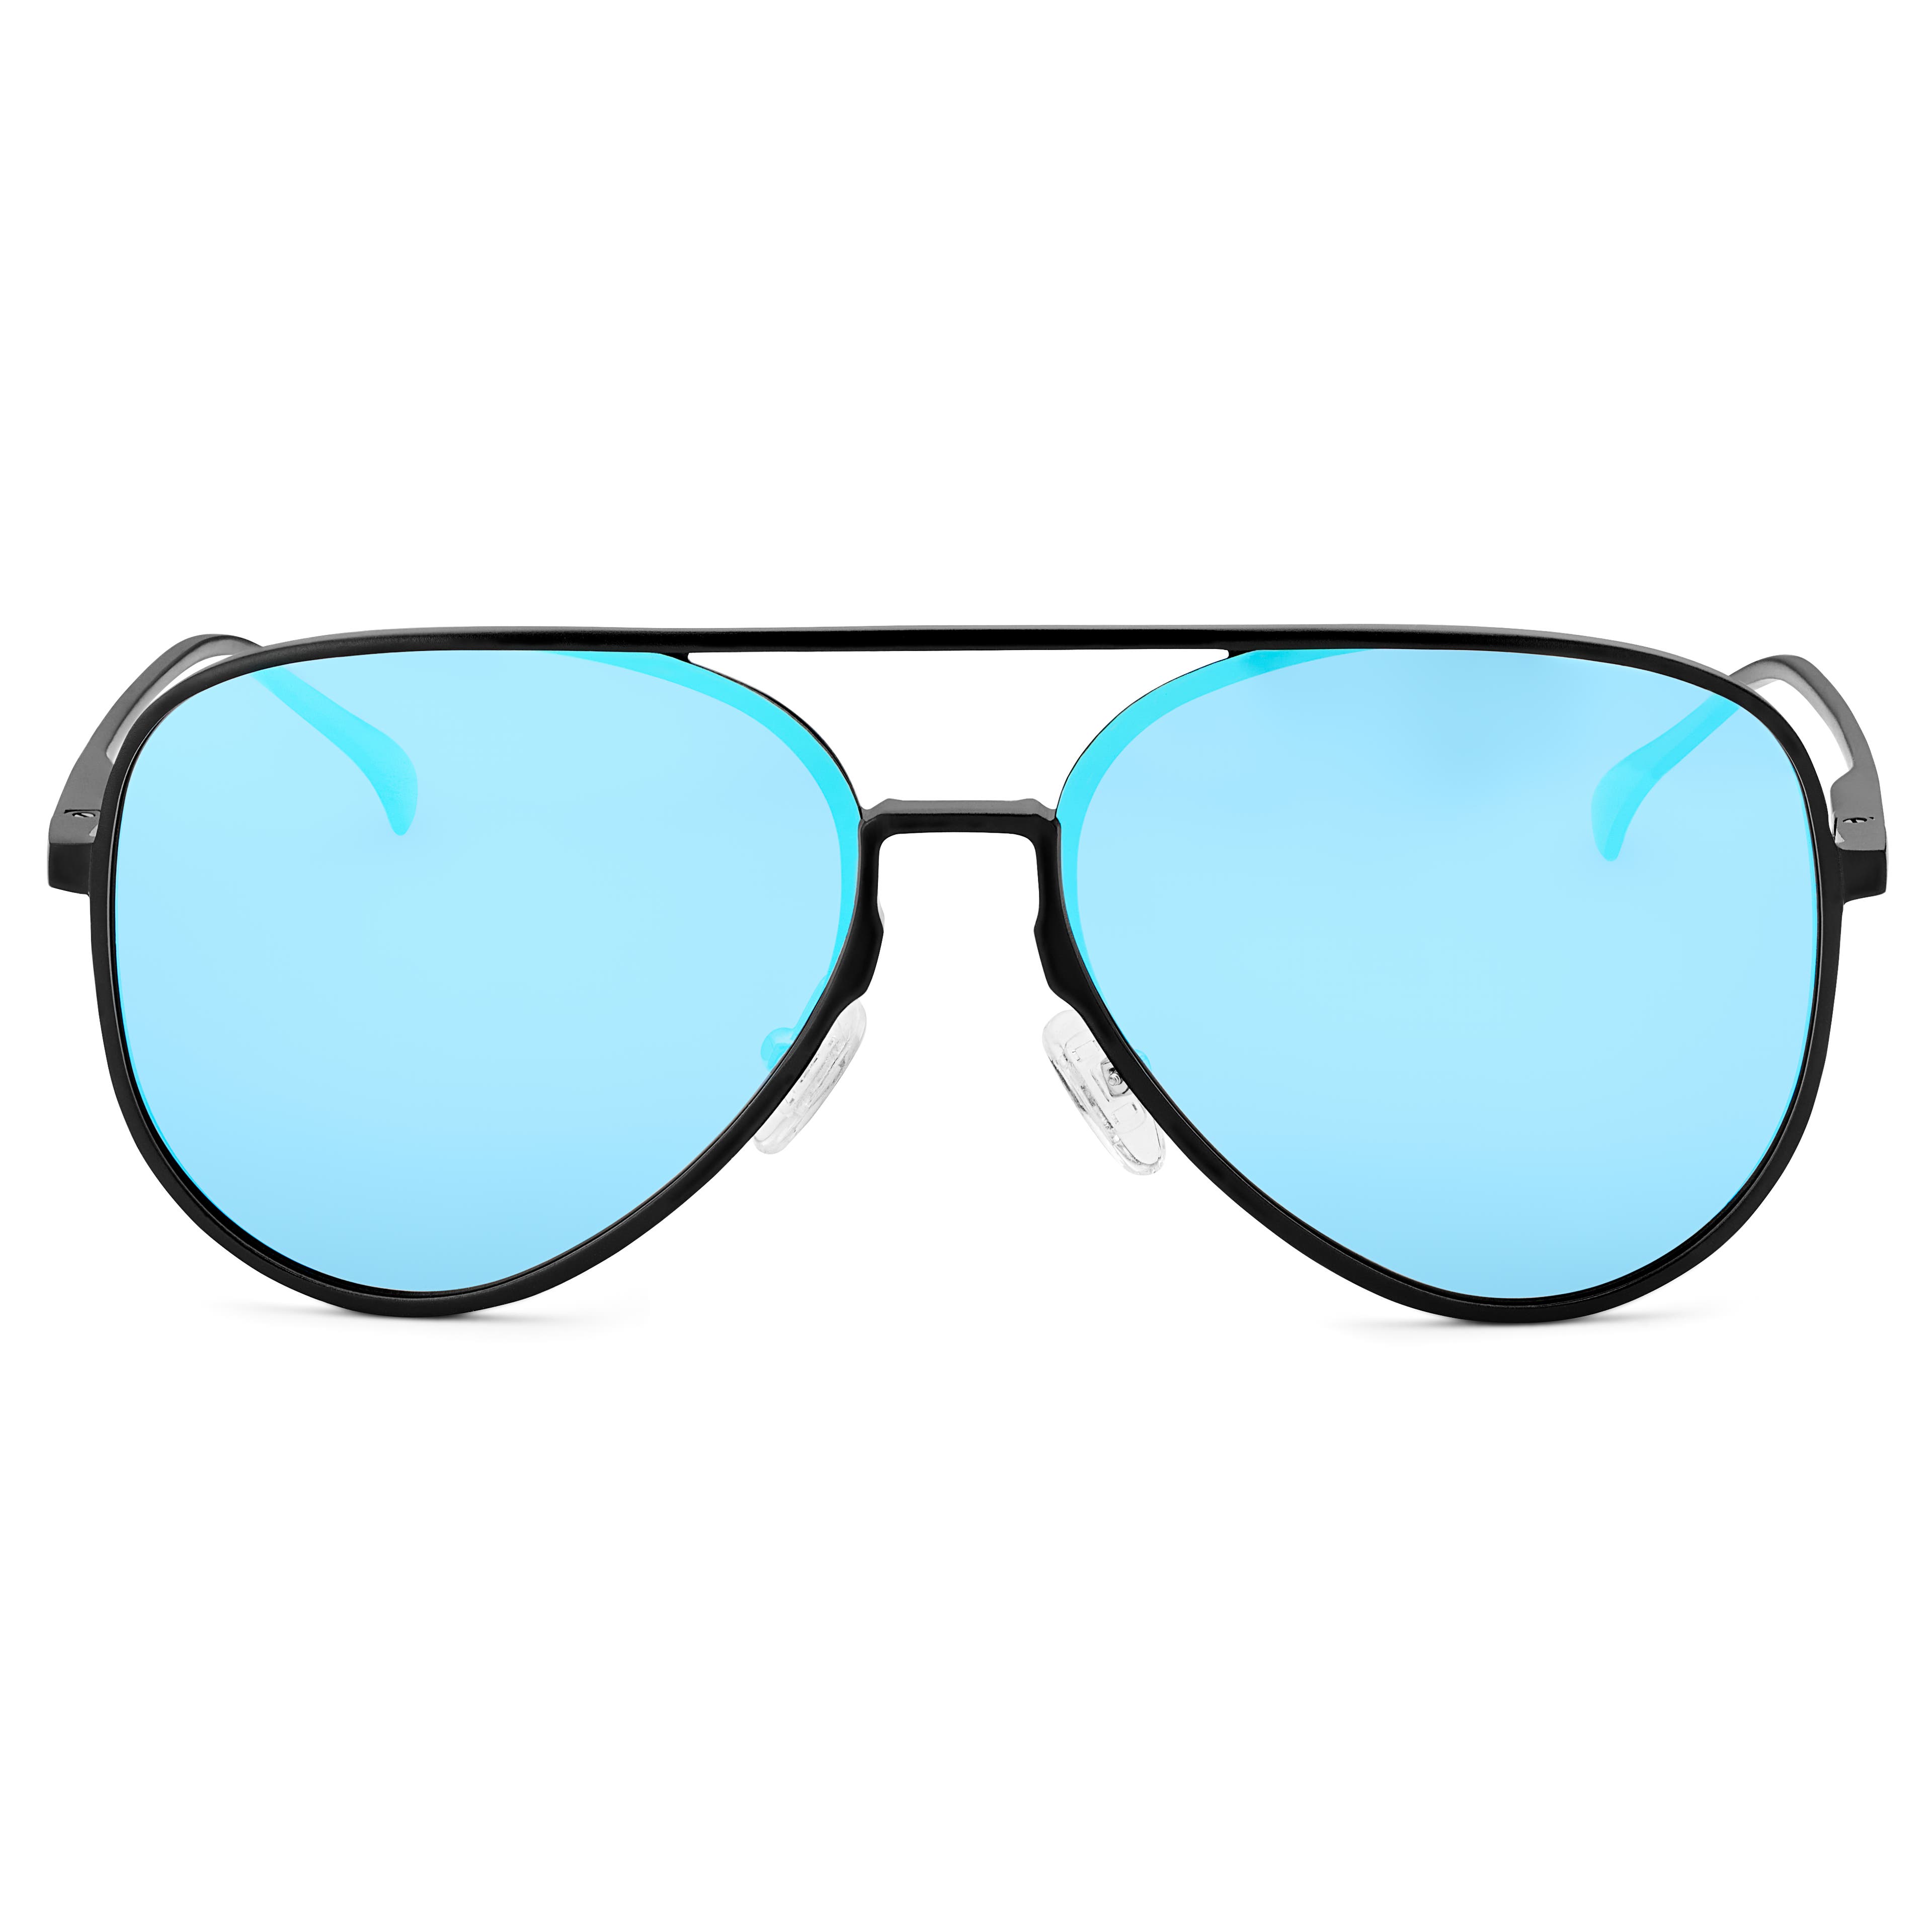 Occhiali da Sole Aviator neri con lenti polarizzate a specchio blu